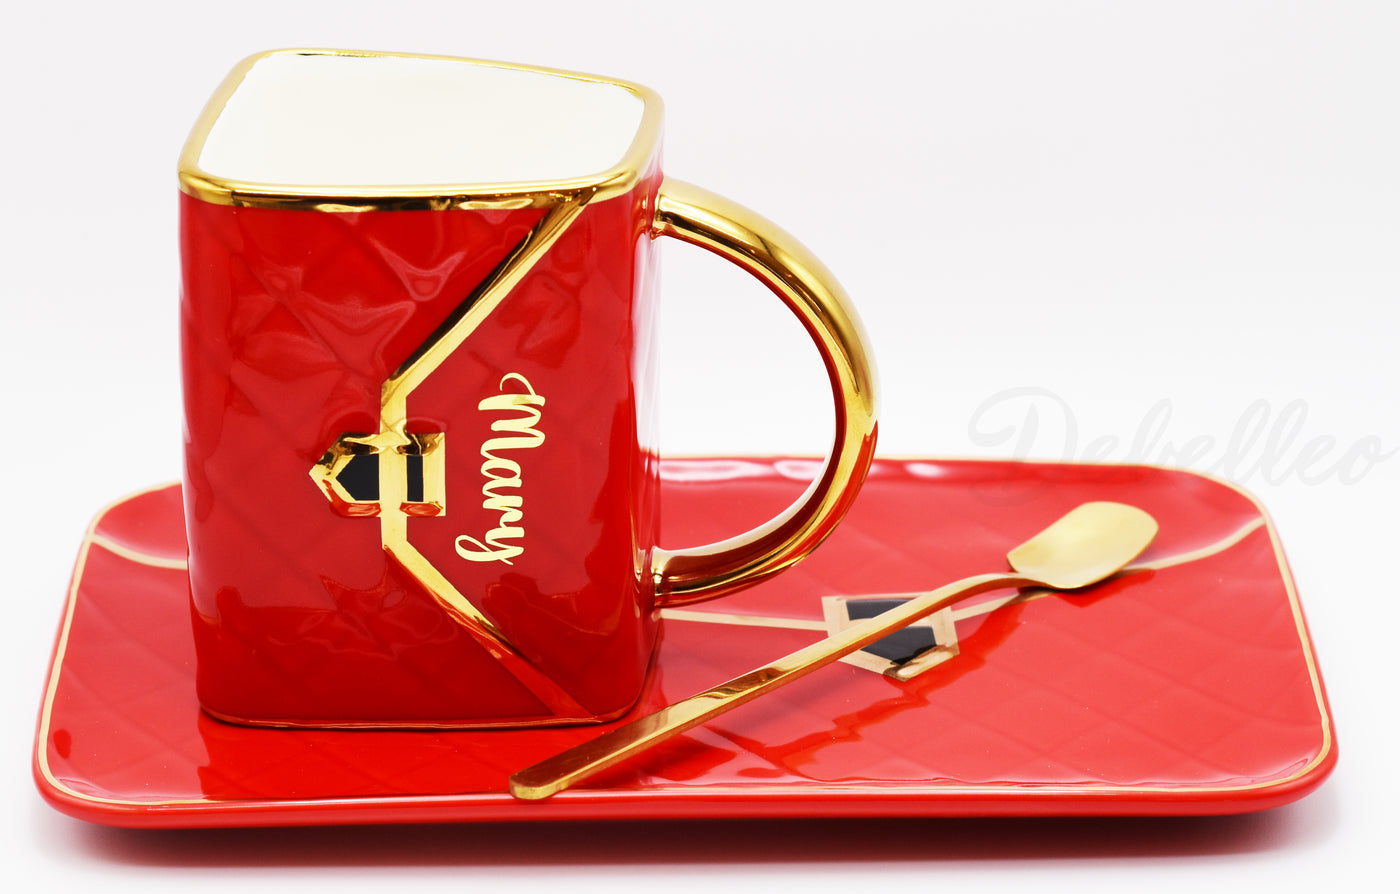 Classic Handbag Coffee Mug with Saucer and Spoon